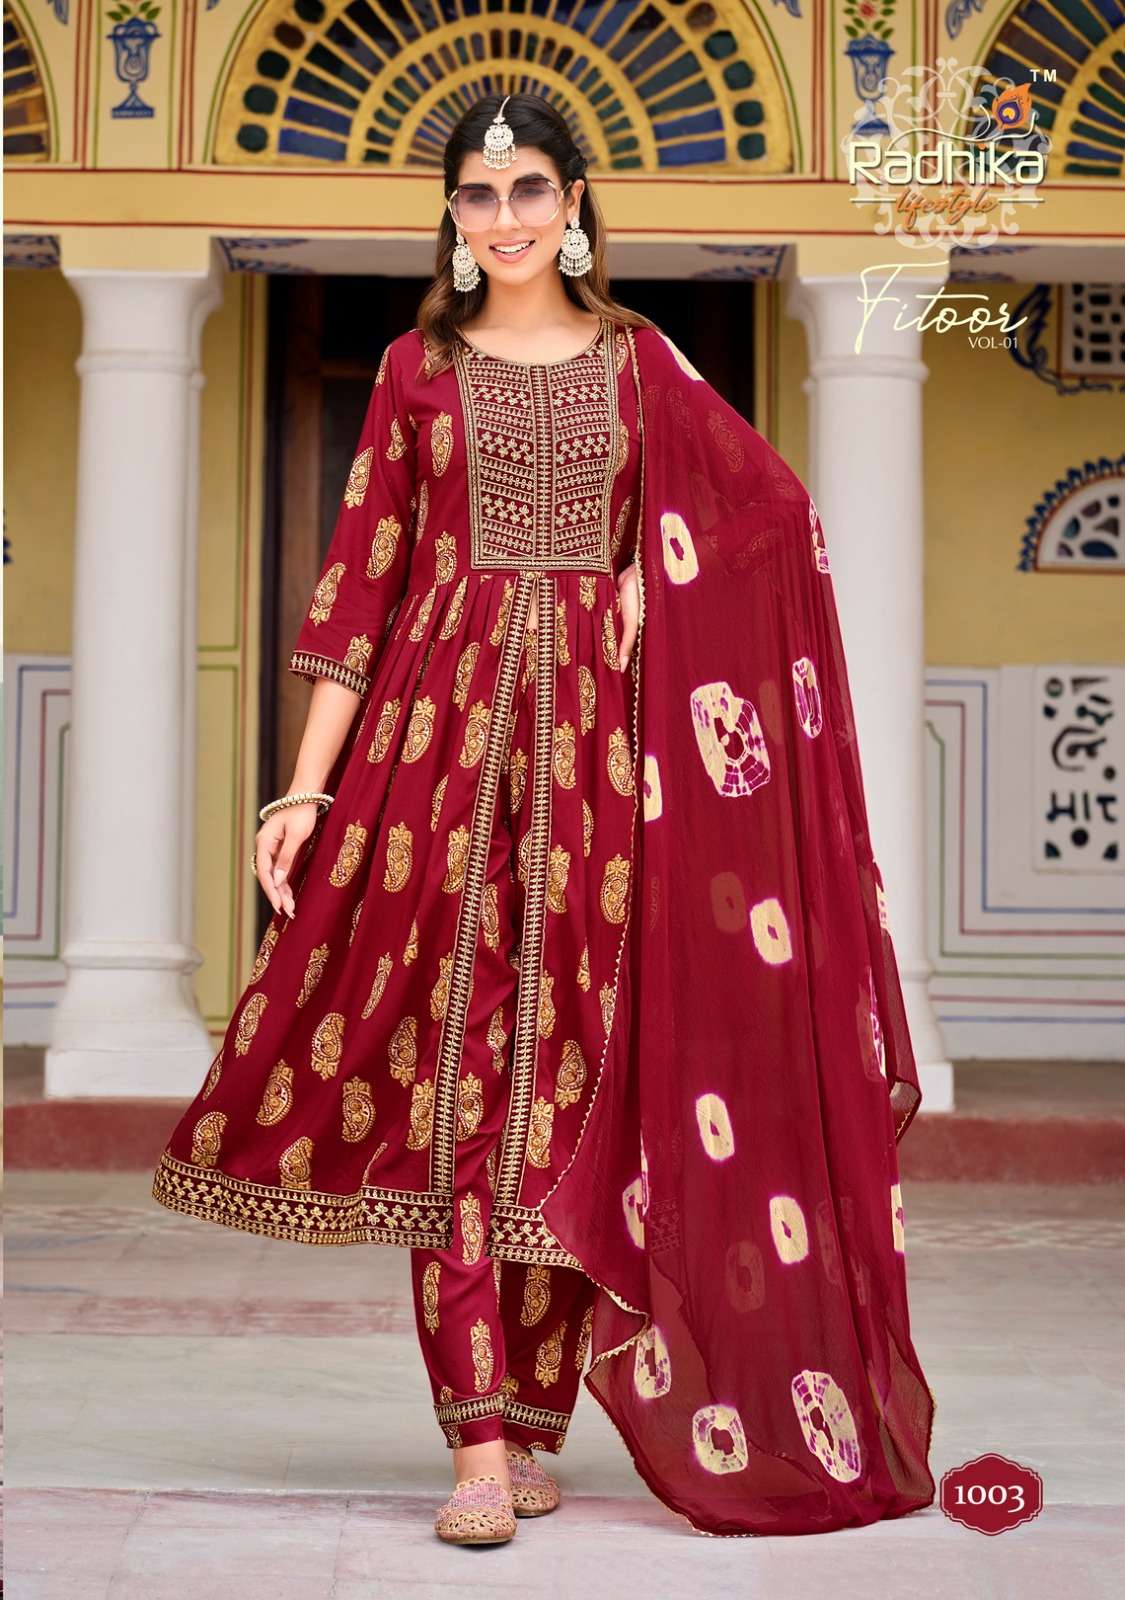 radhika fitoor vol-1 1001-1007 series designer nayra cut wedding wear kurti set wholesaler surat